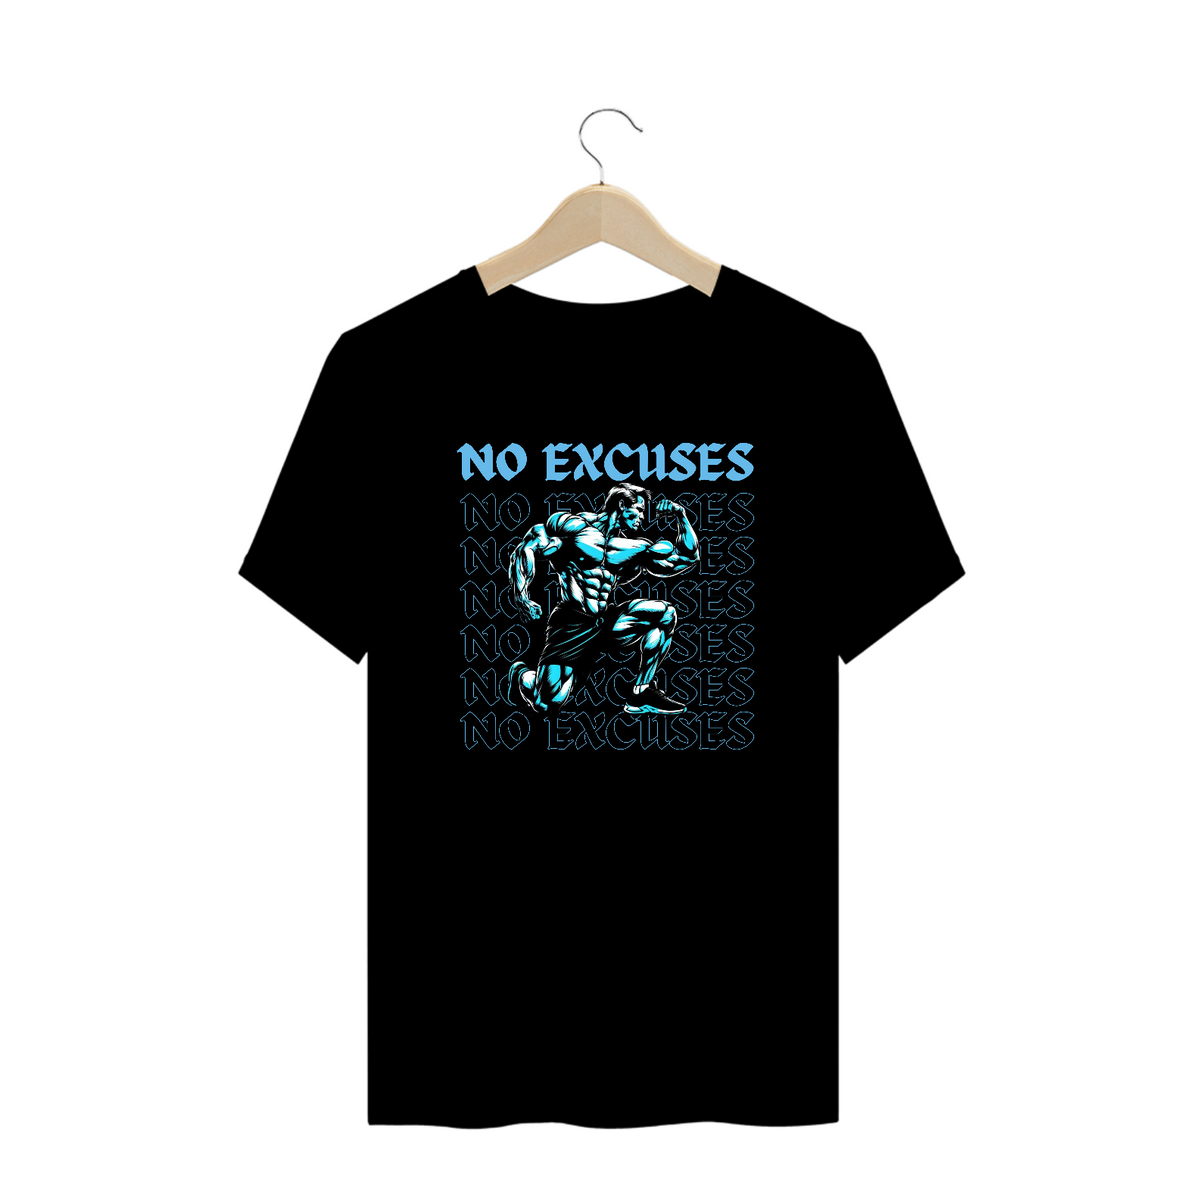 Nome do produto: Camiseta No excuses PLUS SIZE